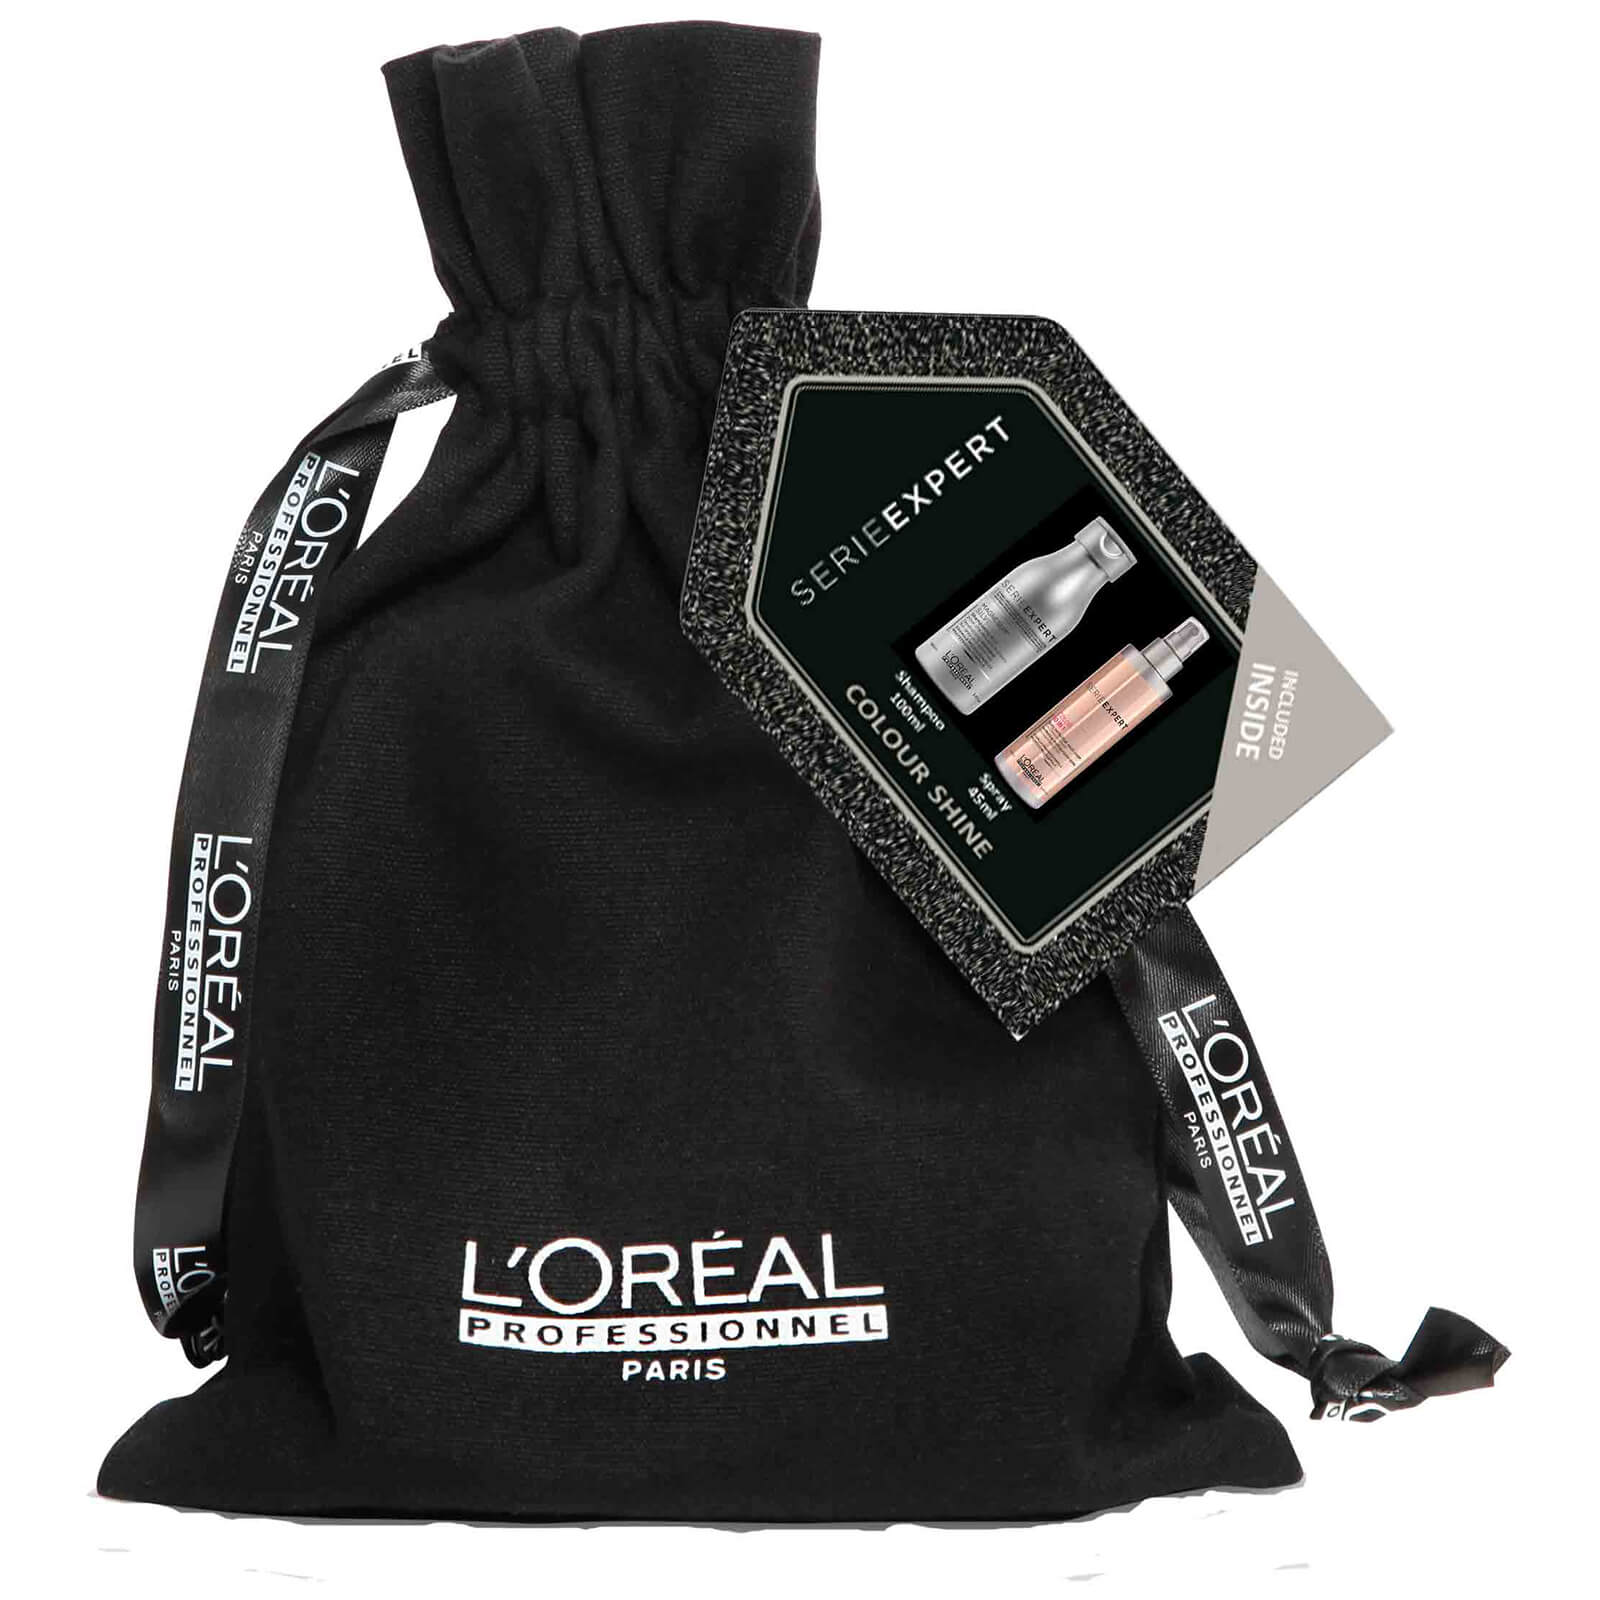 Kit Silver 10-in-1 de L'Oréal Professionnel